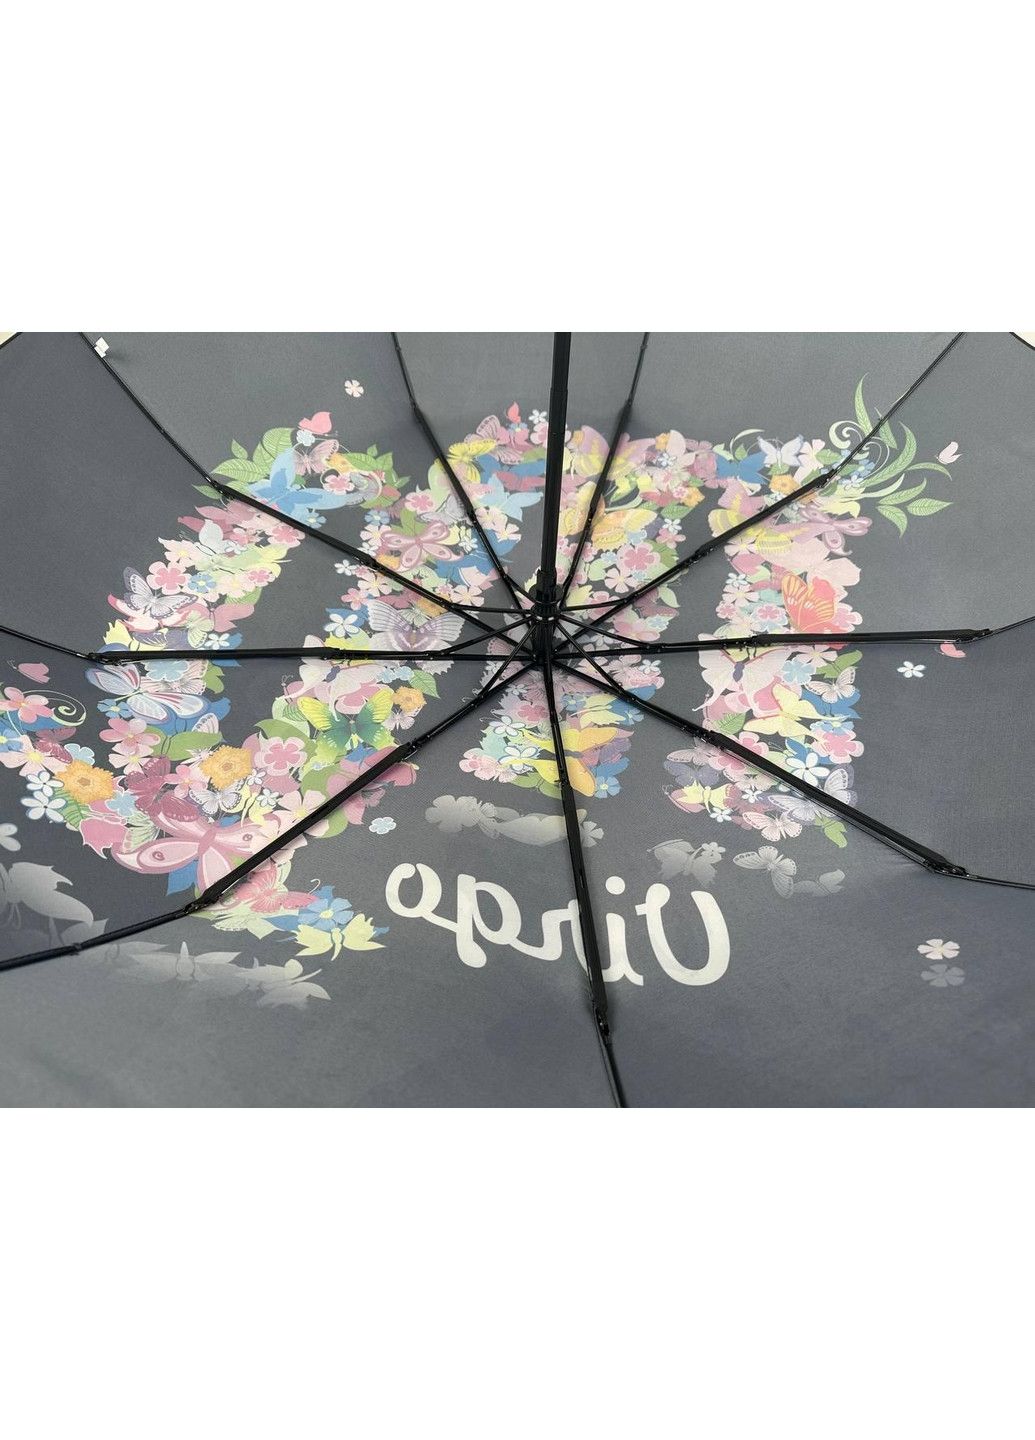 Женский зонт автомат Rain (276392018)